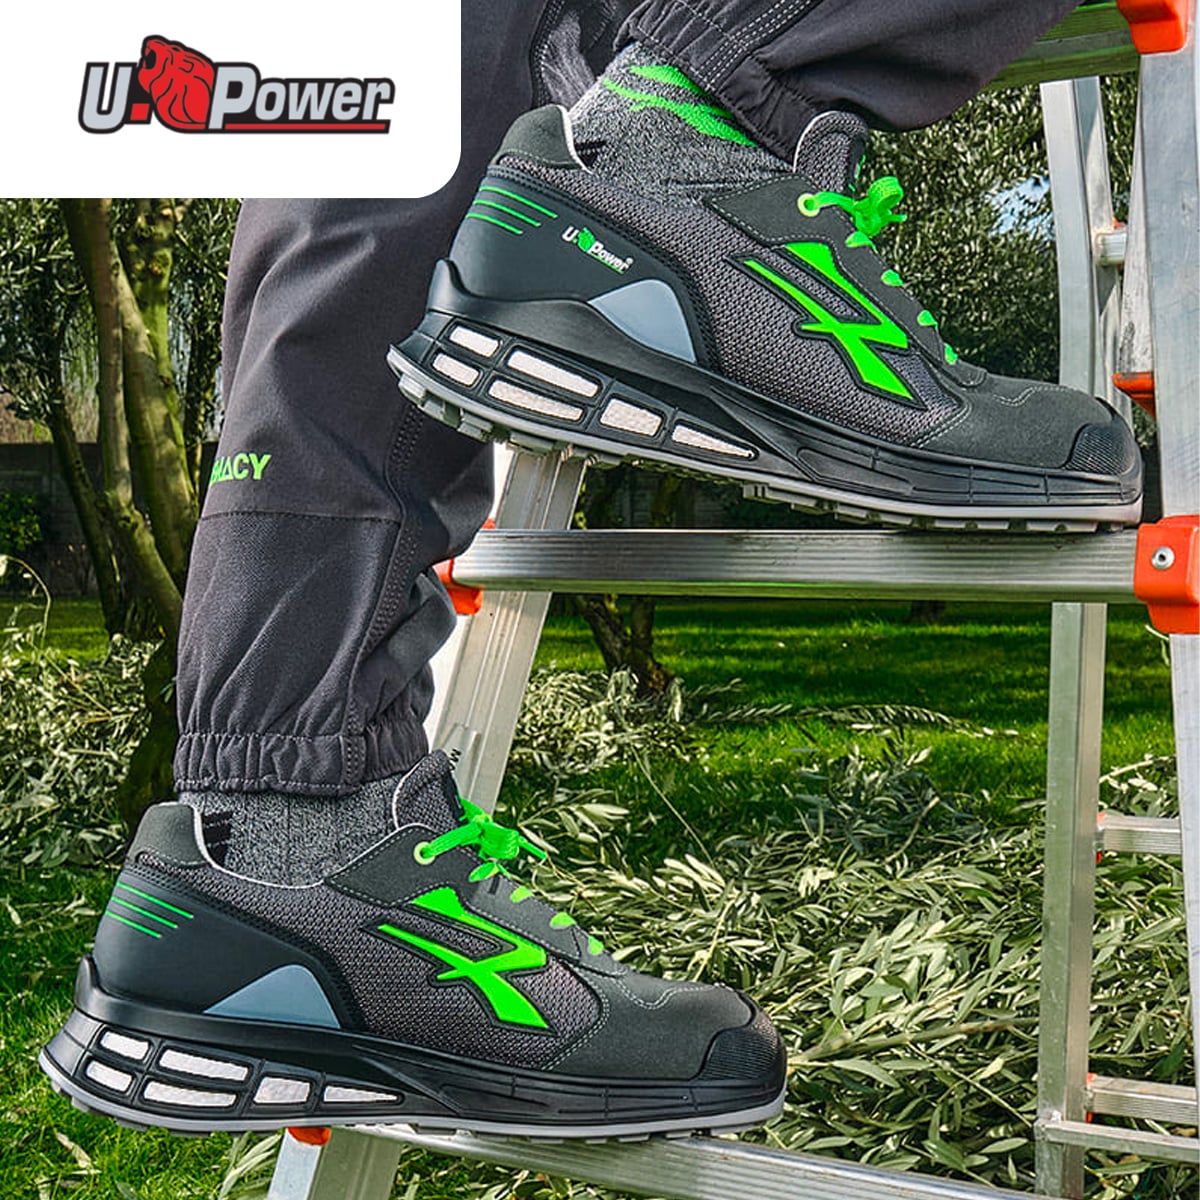 Vendita abbigliamento uPower calzature - GPF Casonato